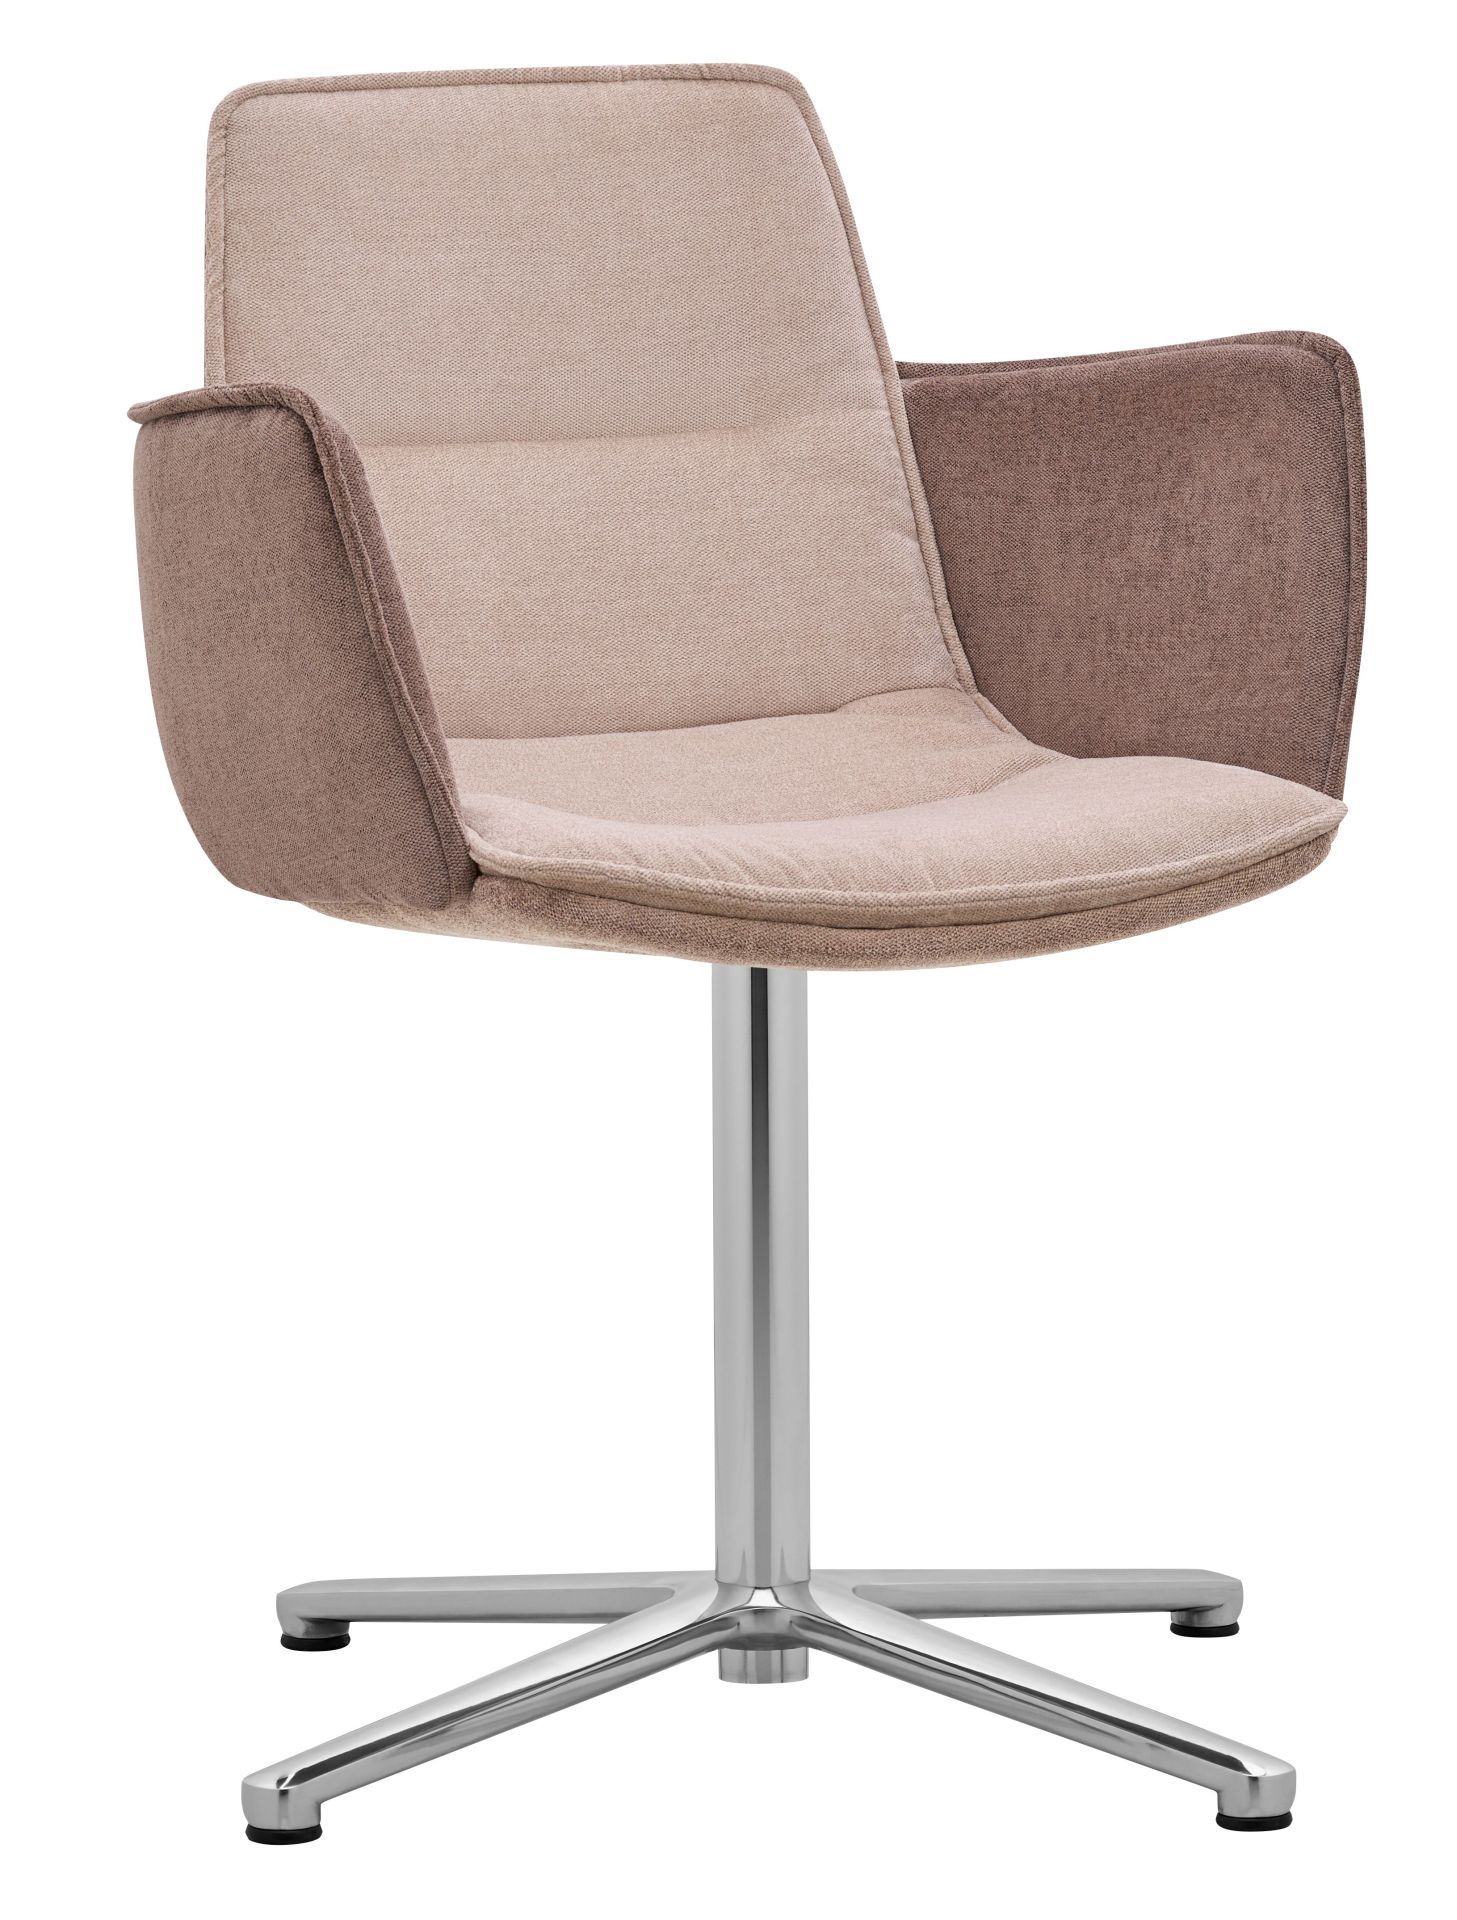 RIM - Židle s područkami EDGE 4202.01 - 